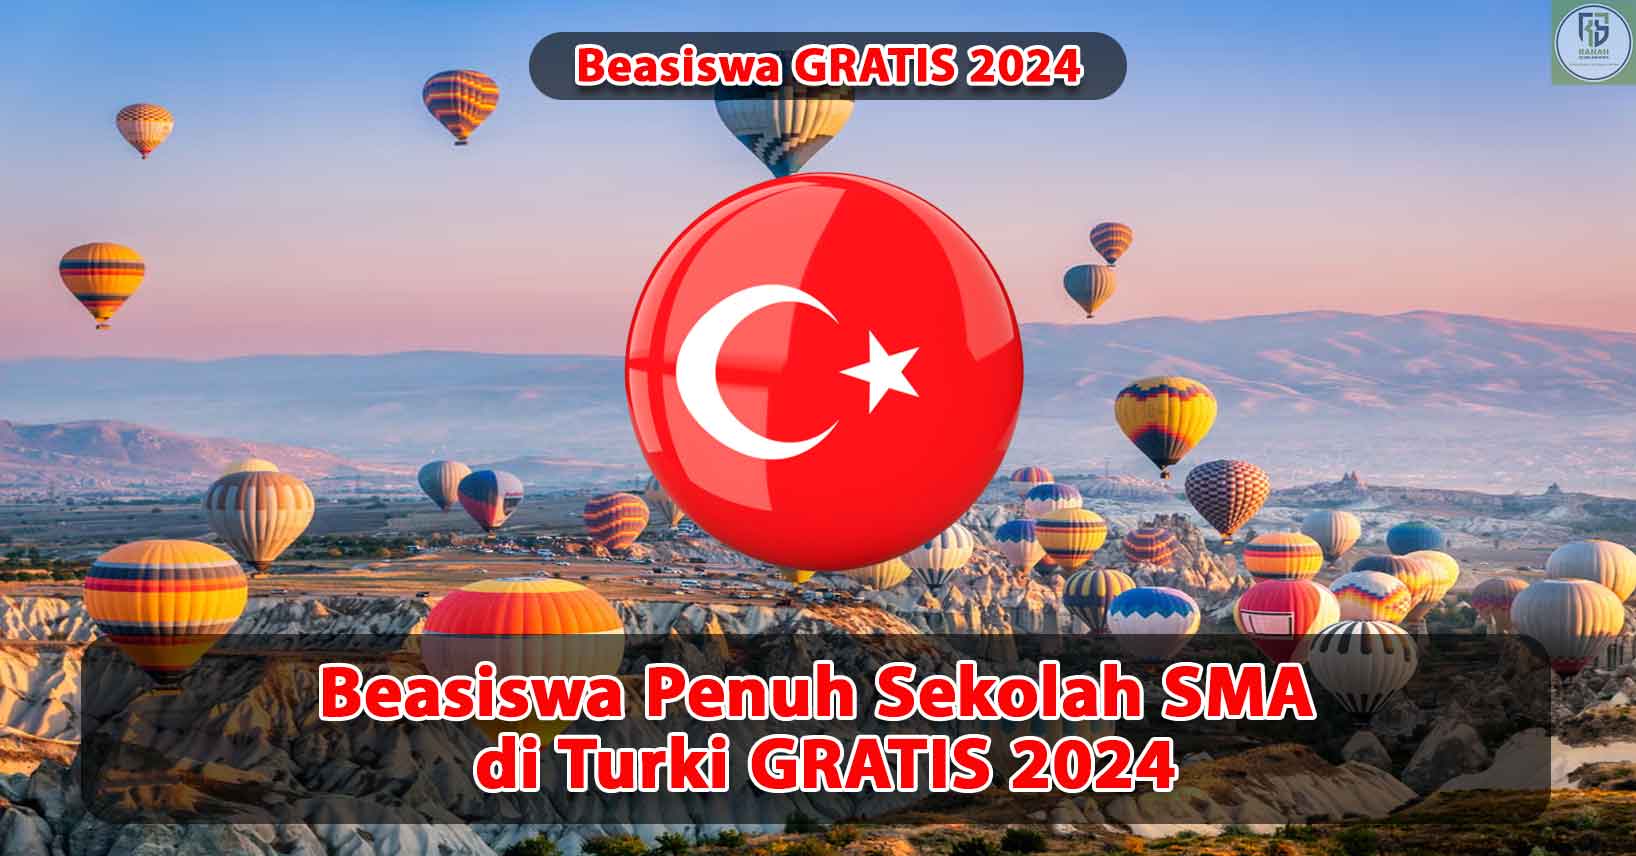 Beasiswa-Penuh-Sekolah-SMA-di-Turki-Gratis-2024